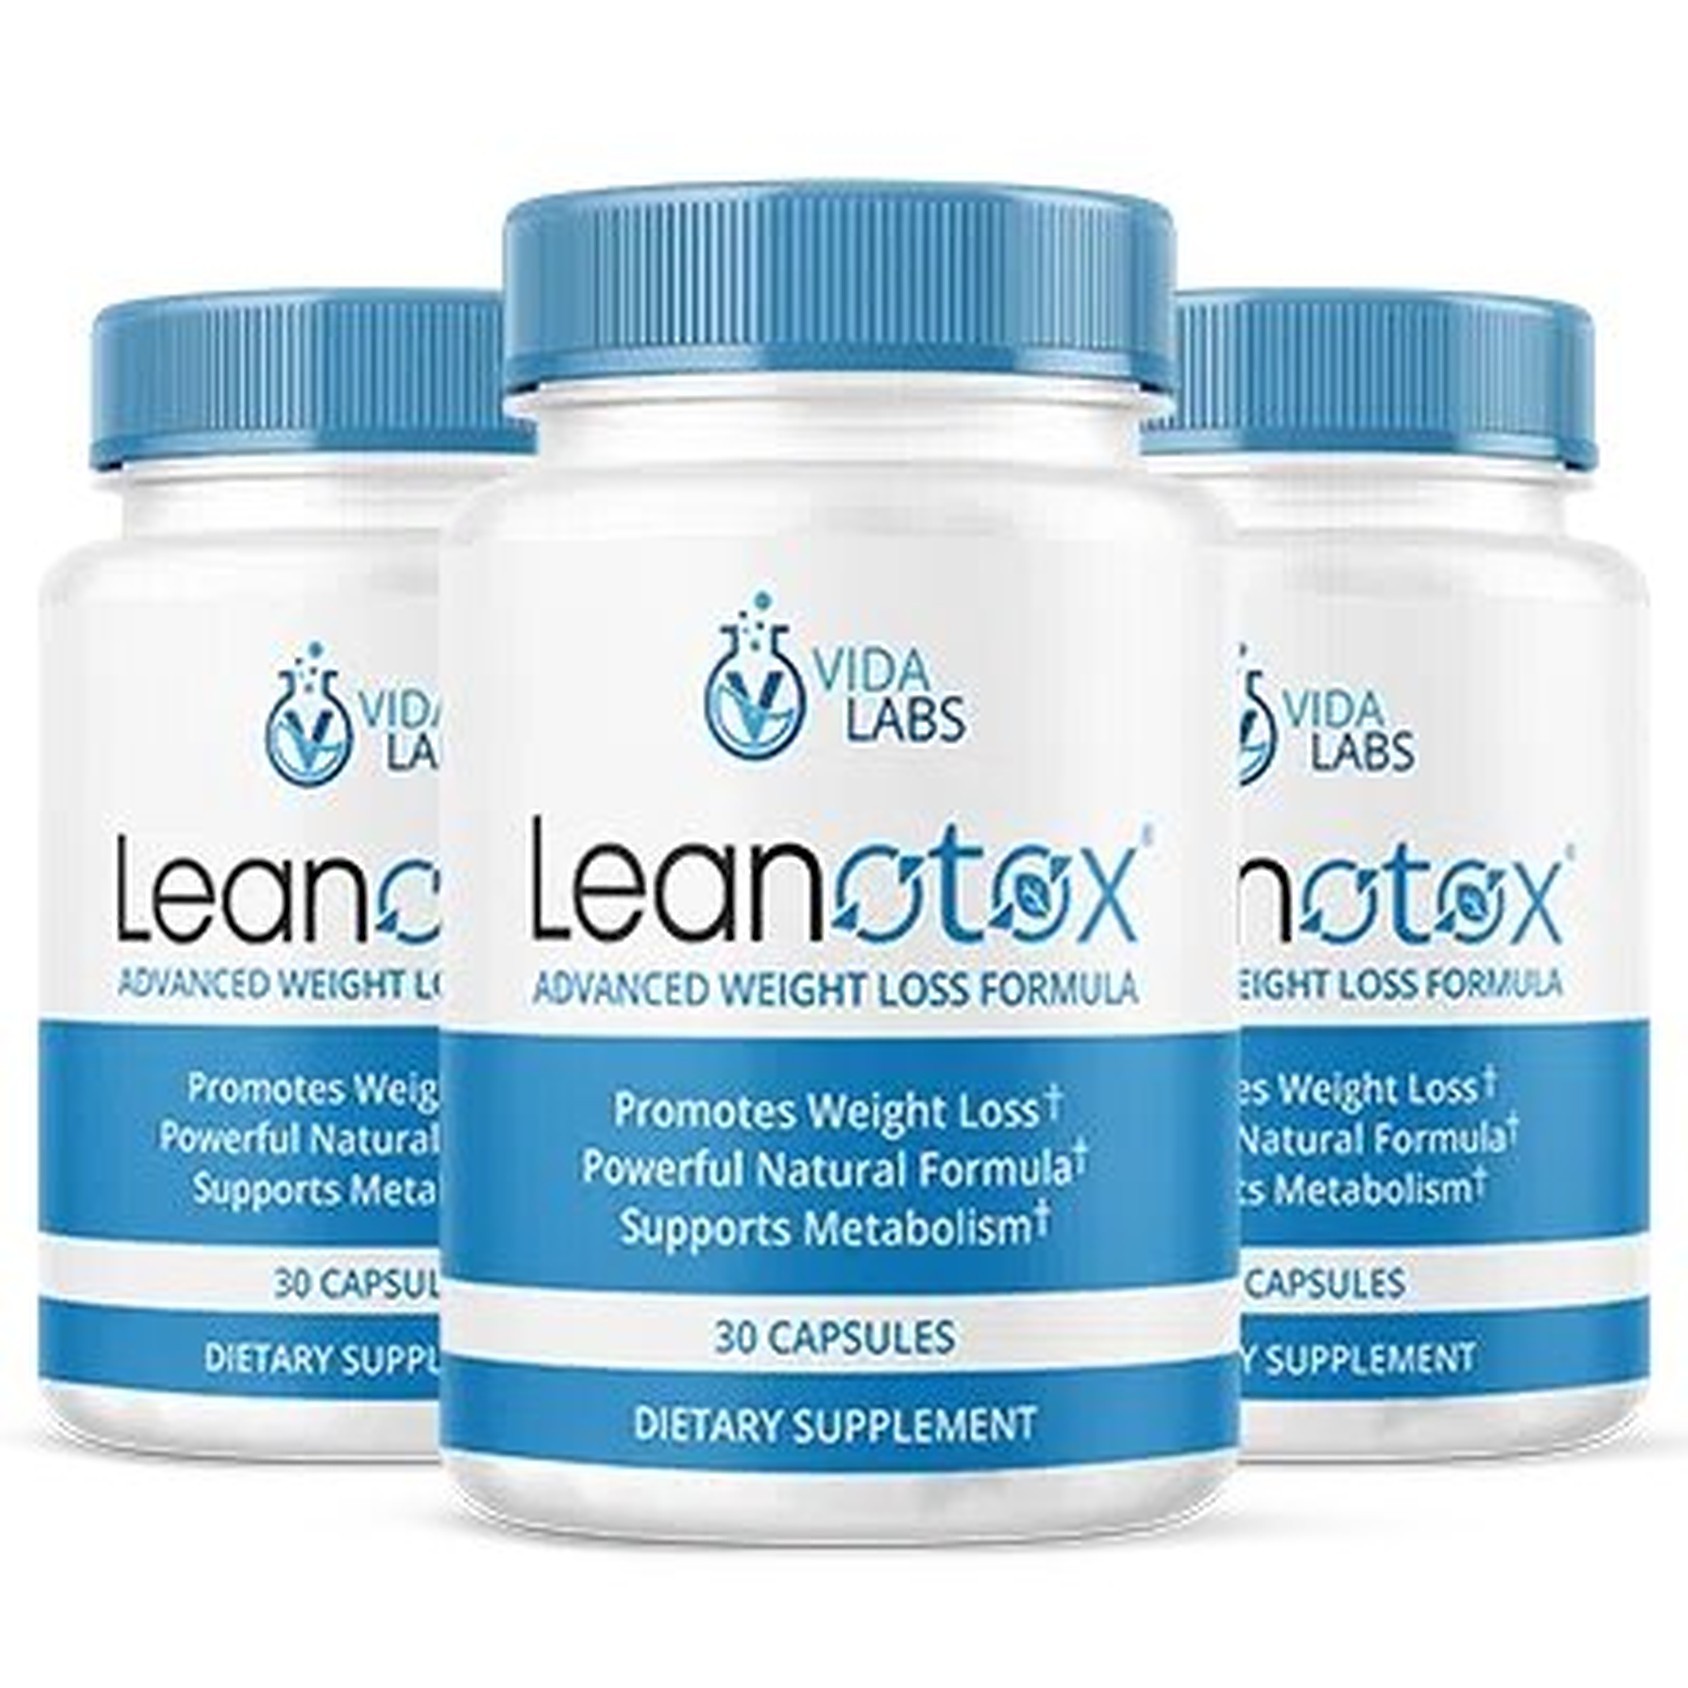 get-leanotox